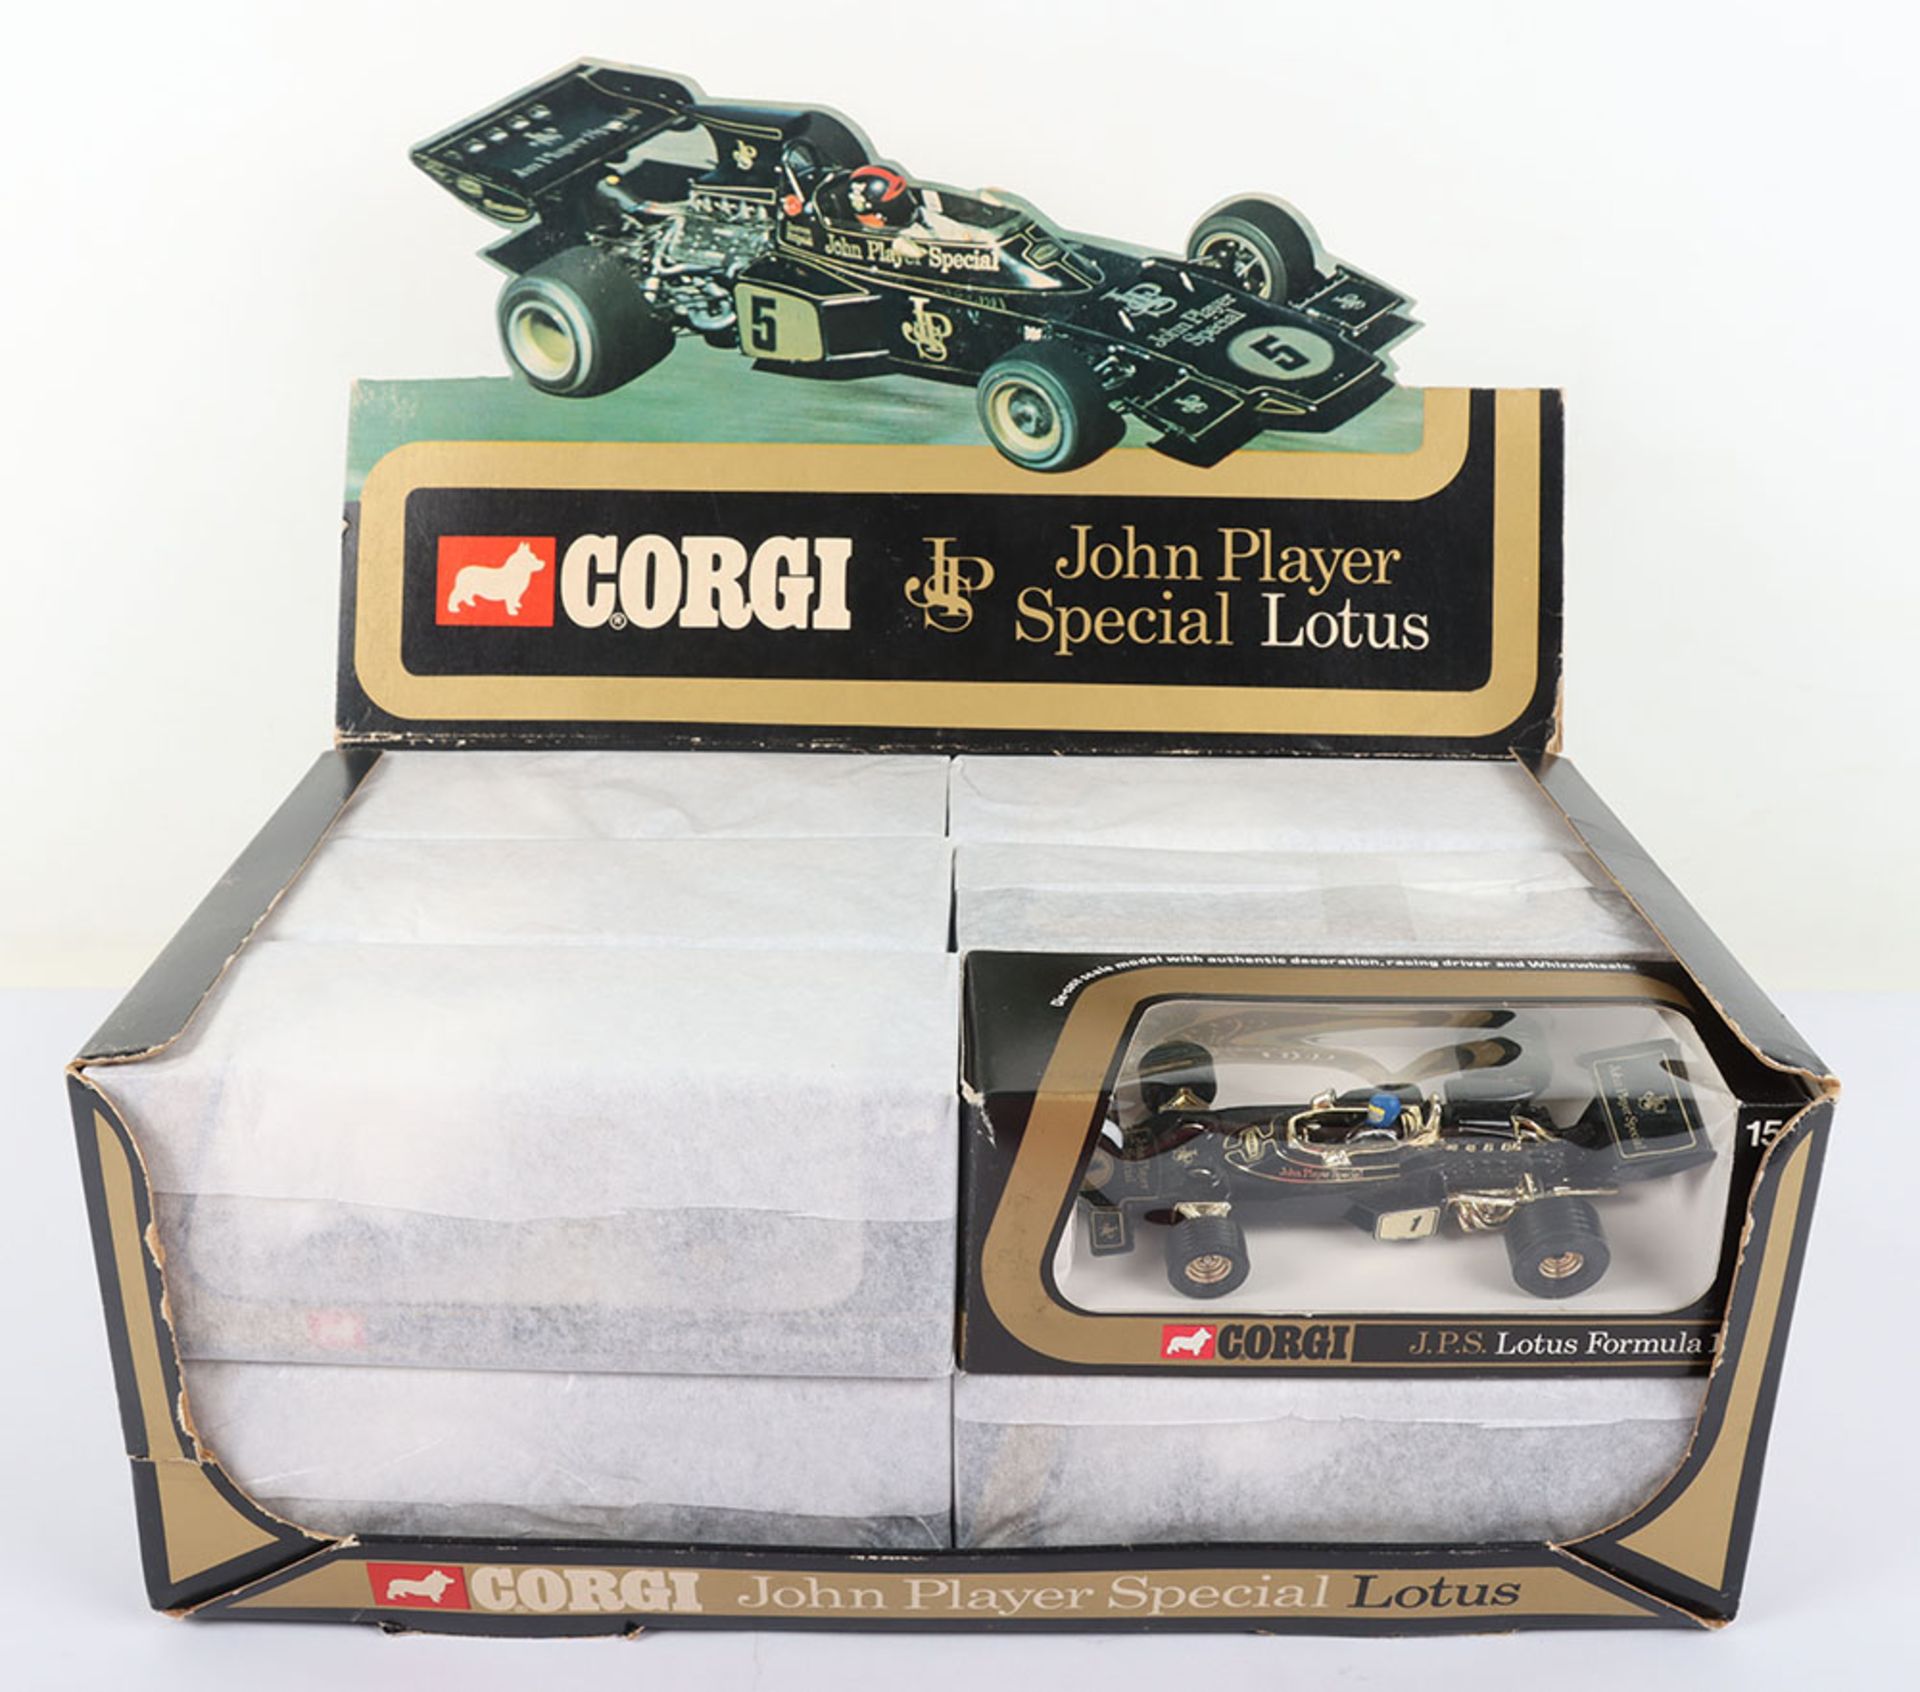 Scarce Corgi Toys Shop Counter Pack of twelve 154 John Player Lotus Formula 1 Racing cars